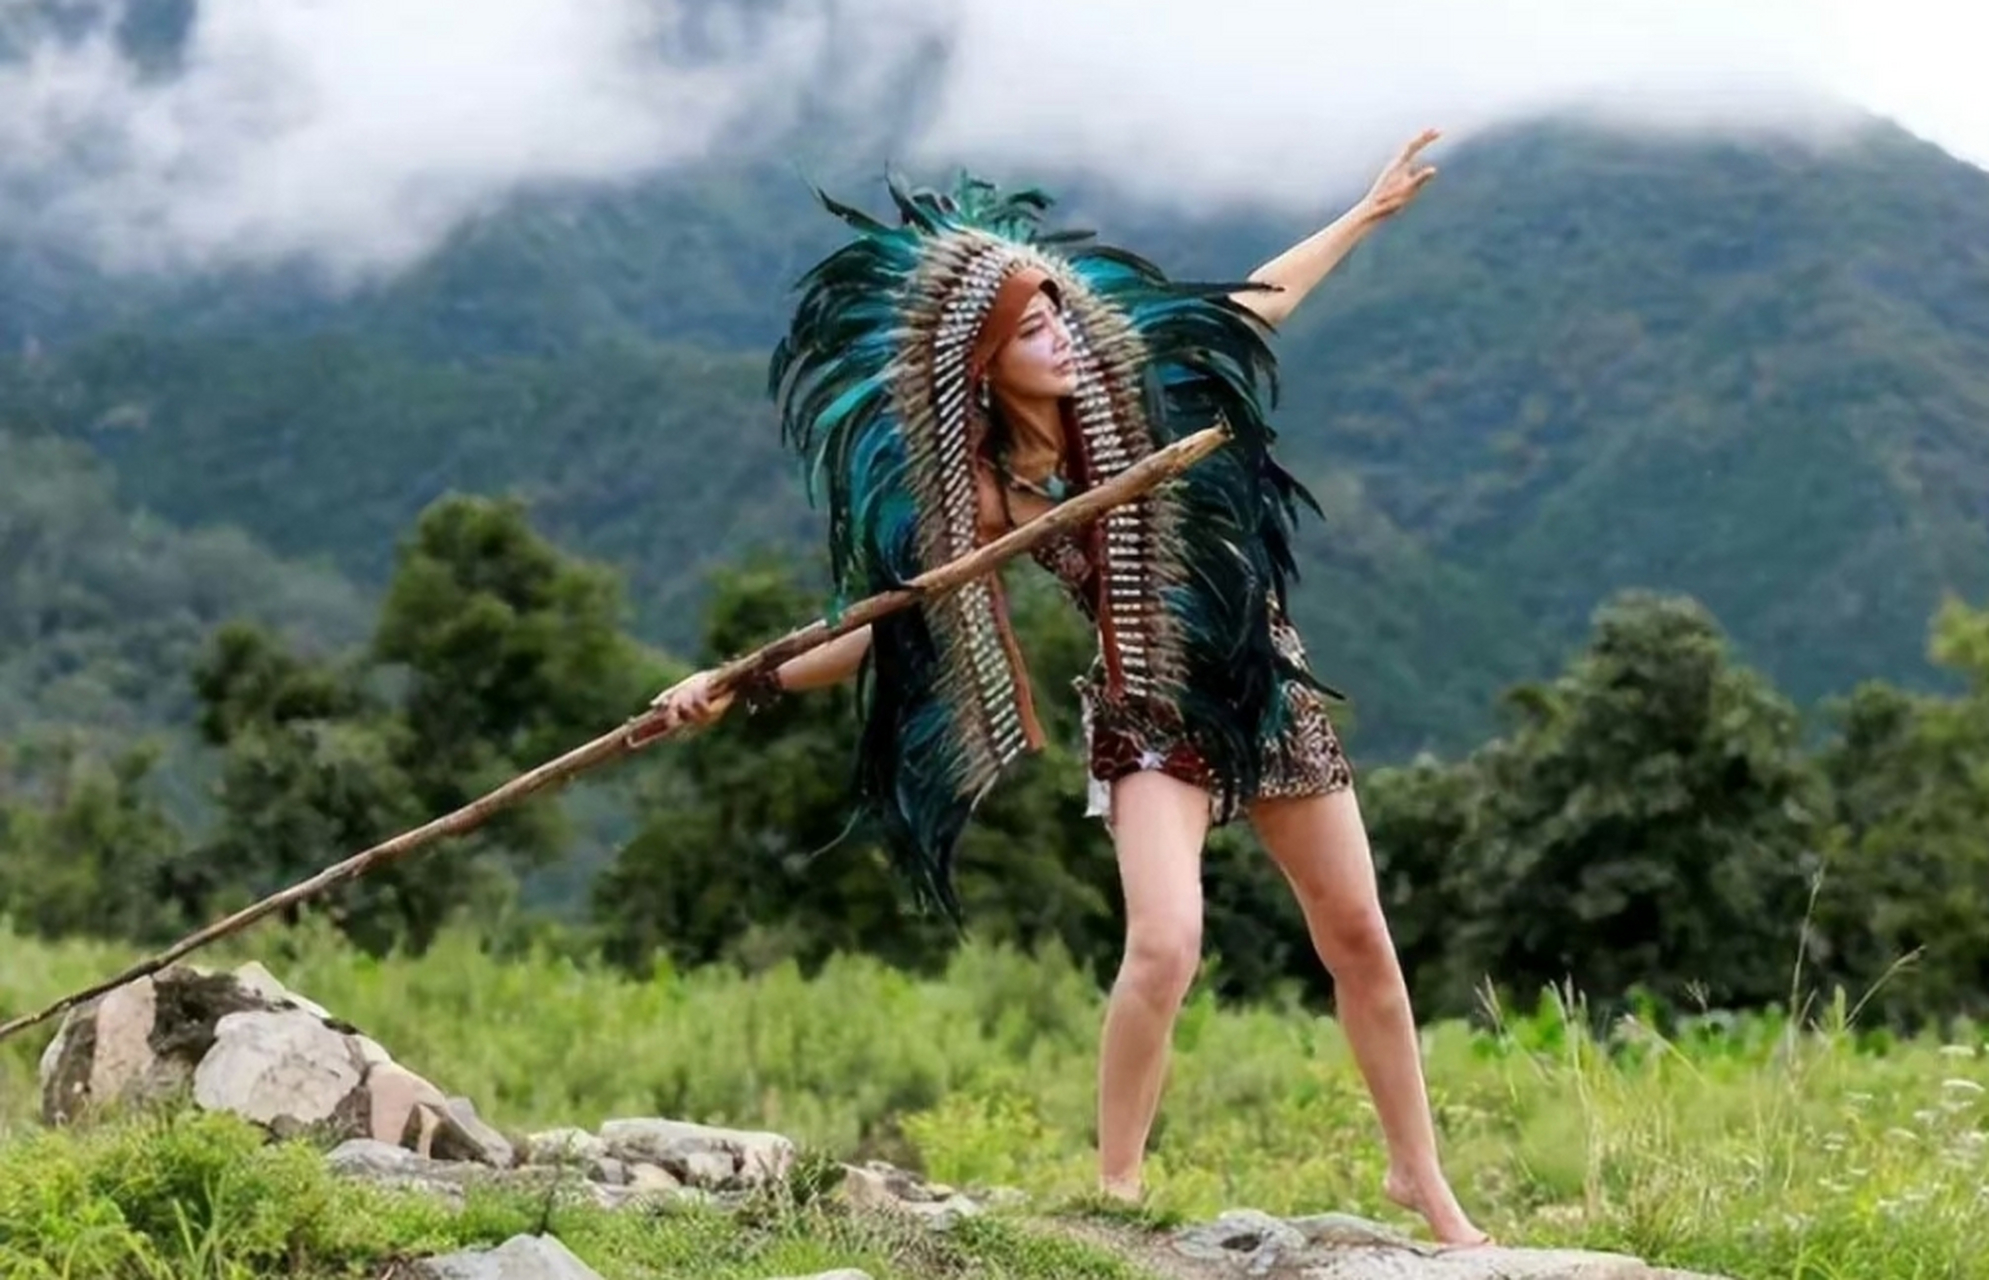 亚马逊原始雨林的印第安人部落中,有一支纯女性部落,一直坚守着不允许